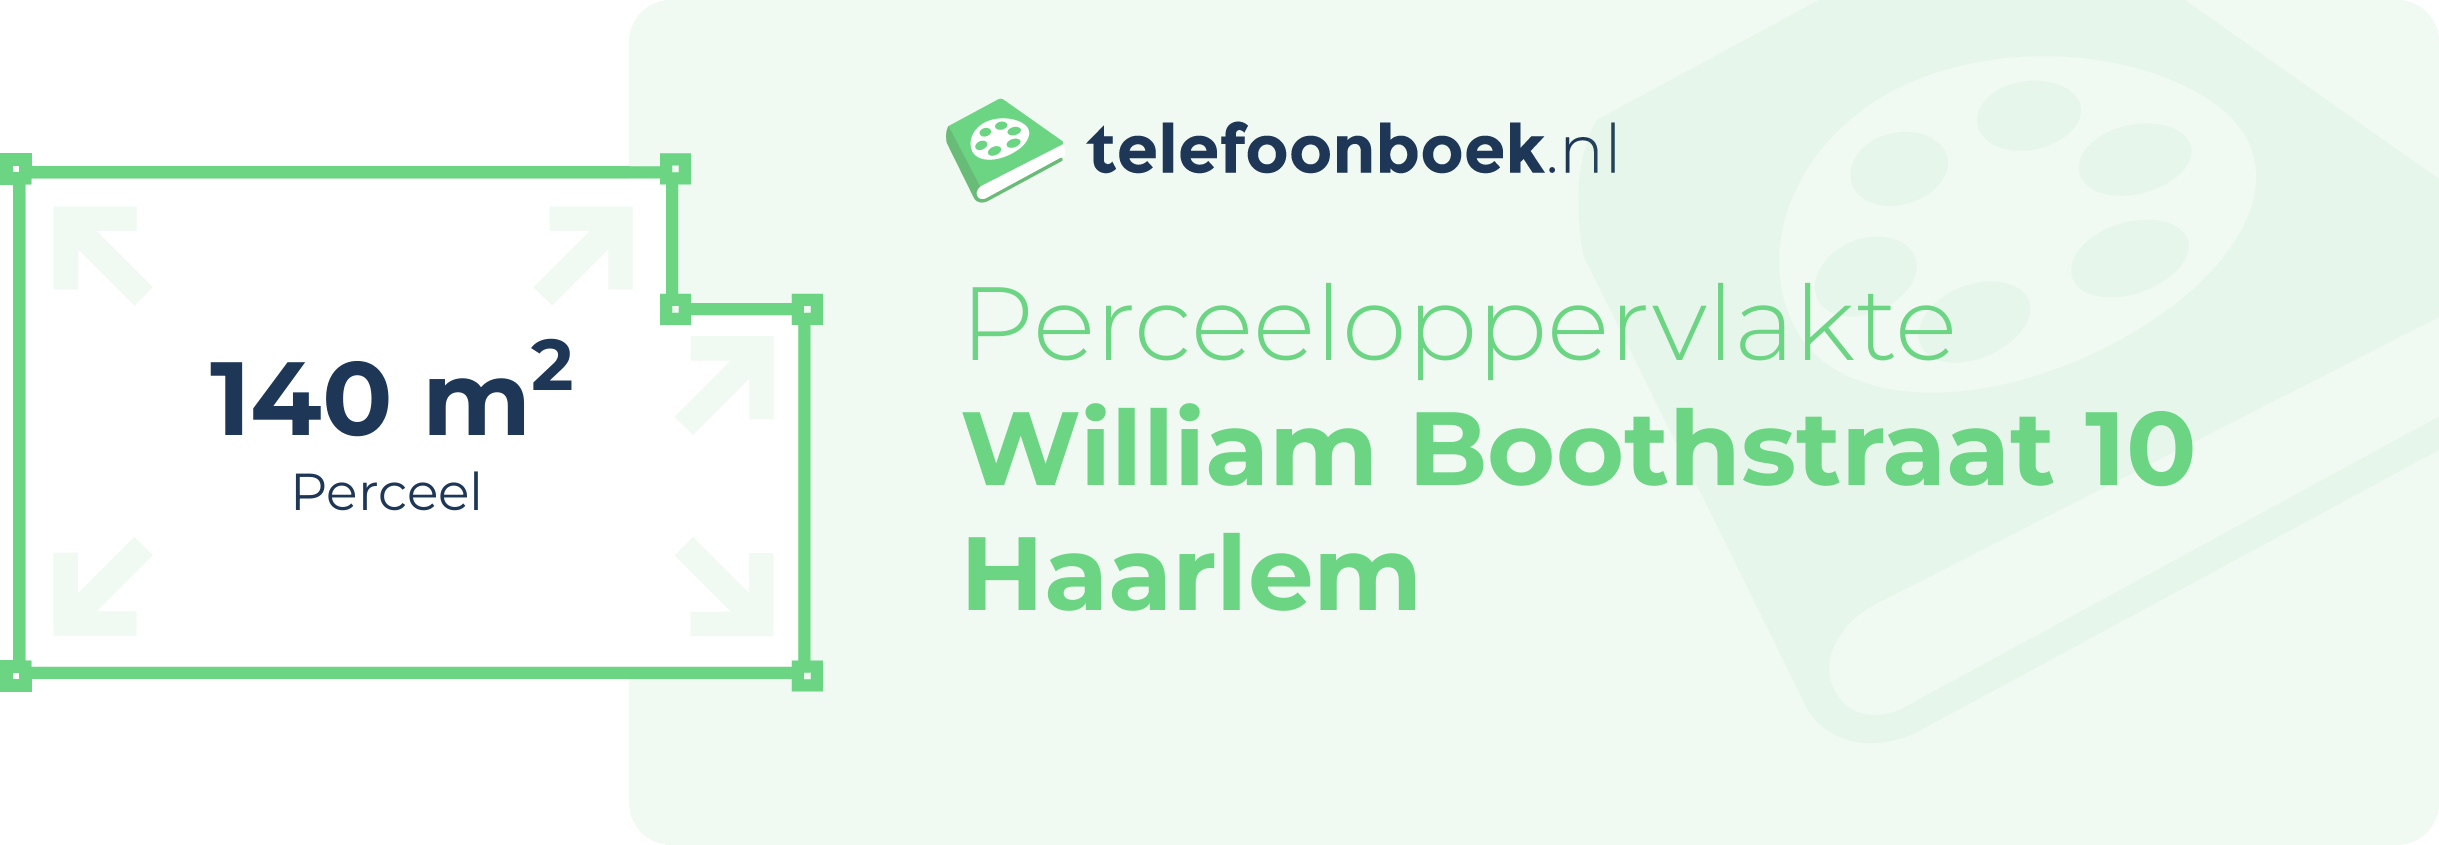 Perceeloppervlakte William Boothstraat 10 Haarlem